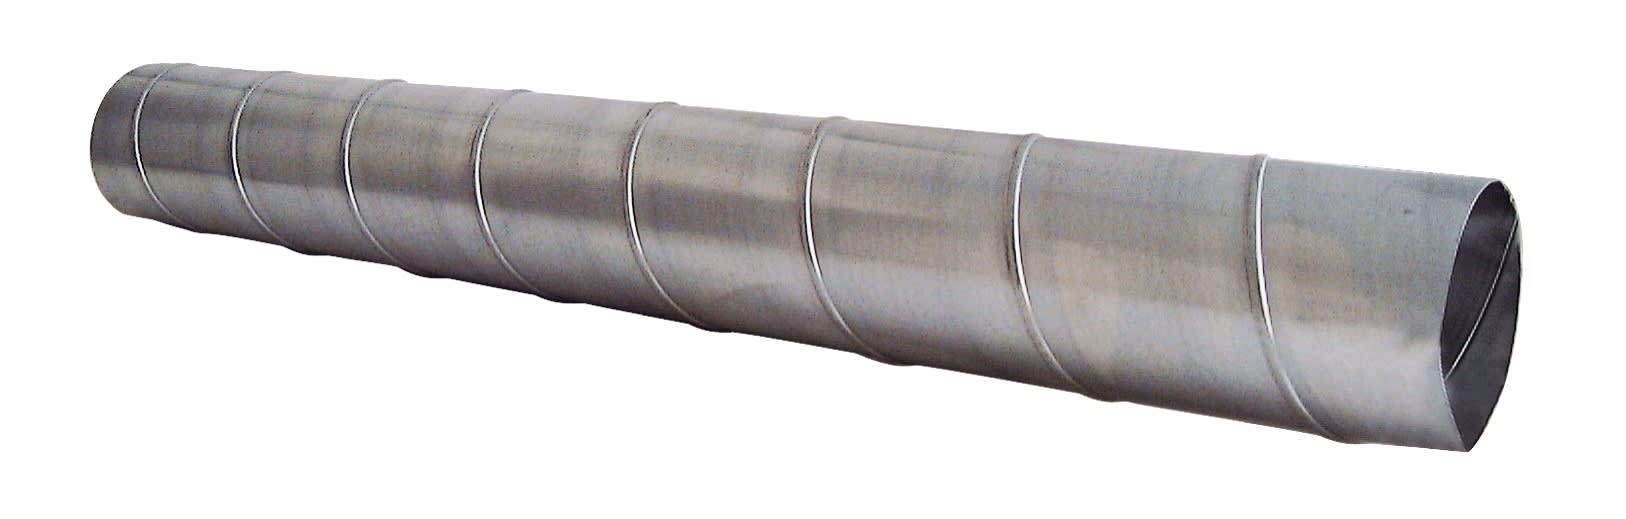 S&P - Conduit spiralé acier galvanisé, D 160 mm, longueur 2,47 m